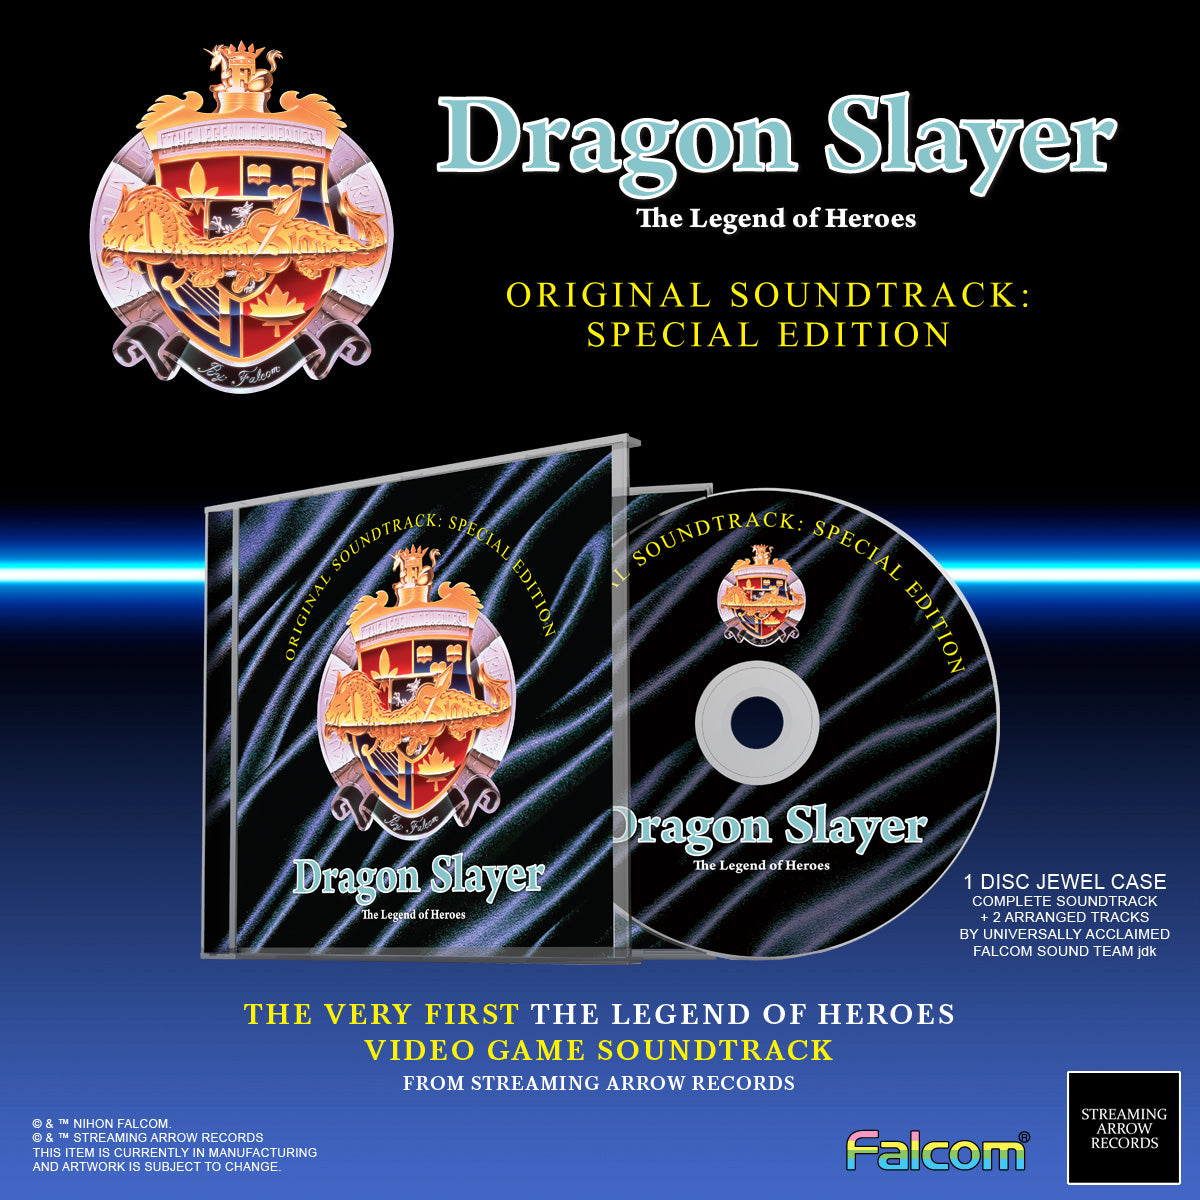 Falcom Sound Team jdk - Dragon Slayer: The Legend of Heroes